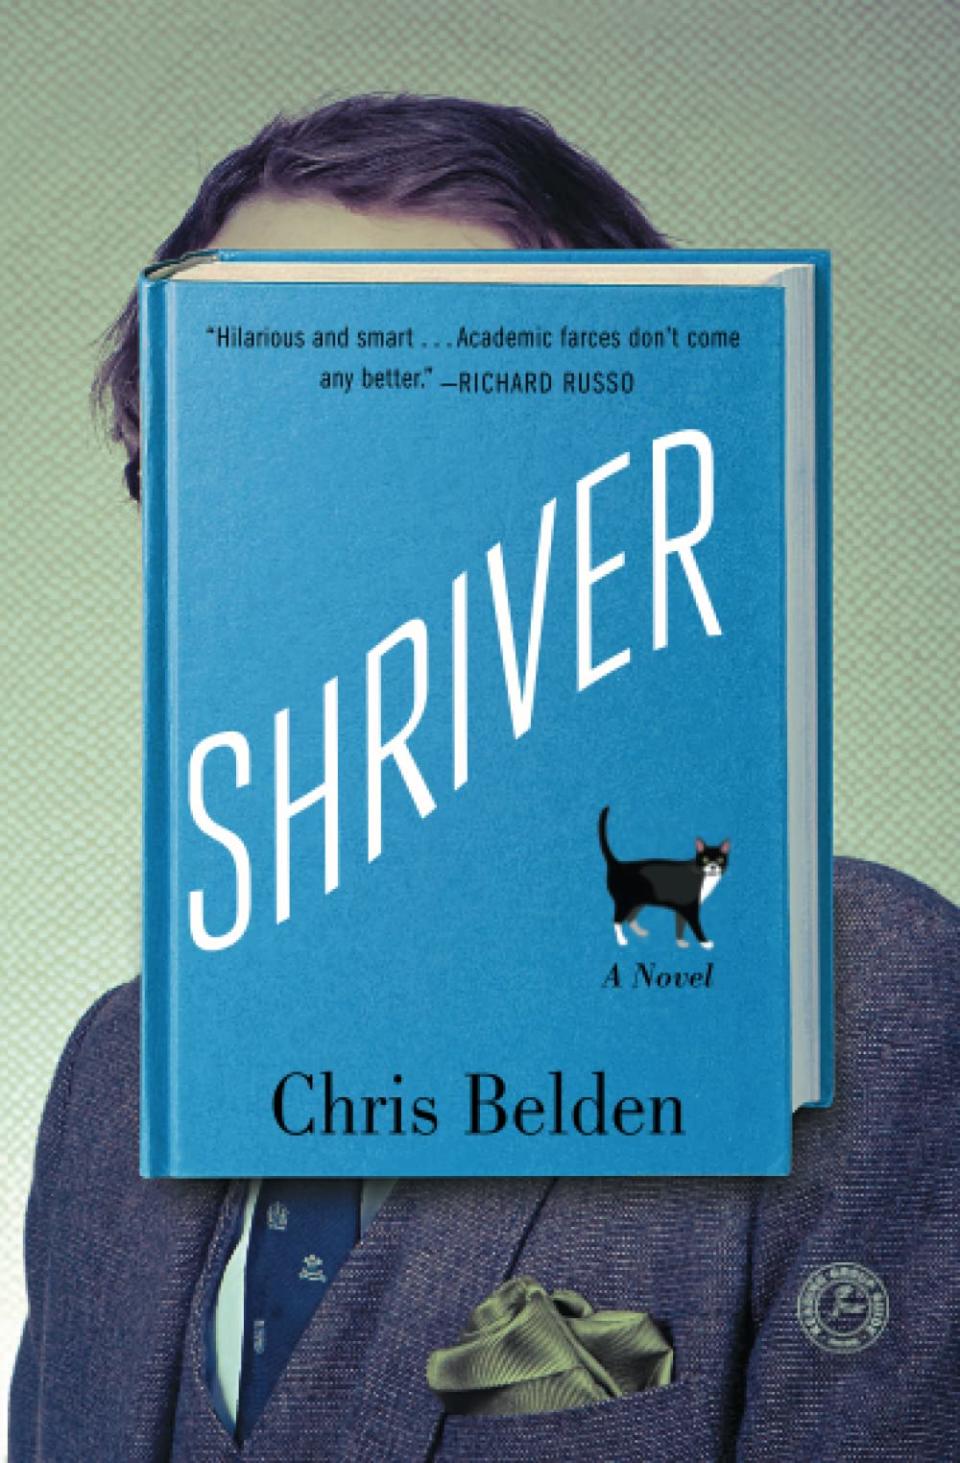 Shriver by Chris Belden